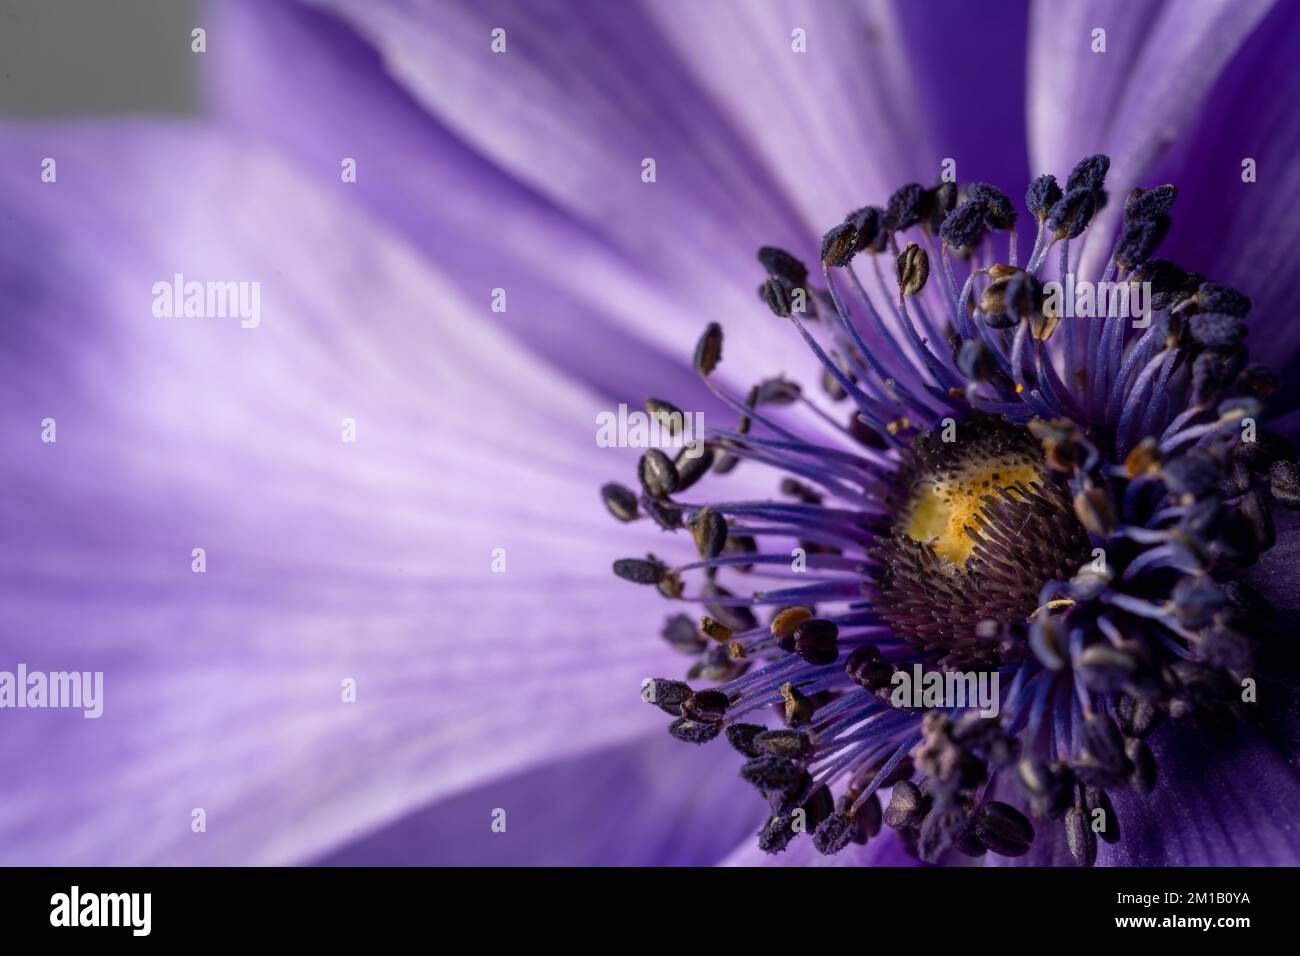 Superbe photo macro d'une fleur d'anémone violette. Décoration d'art border. Lumière magique. Gros plan extrême. Magnifique fond de nature. AMAZ Banque D'Images